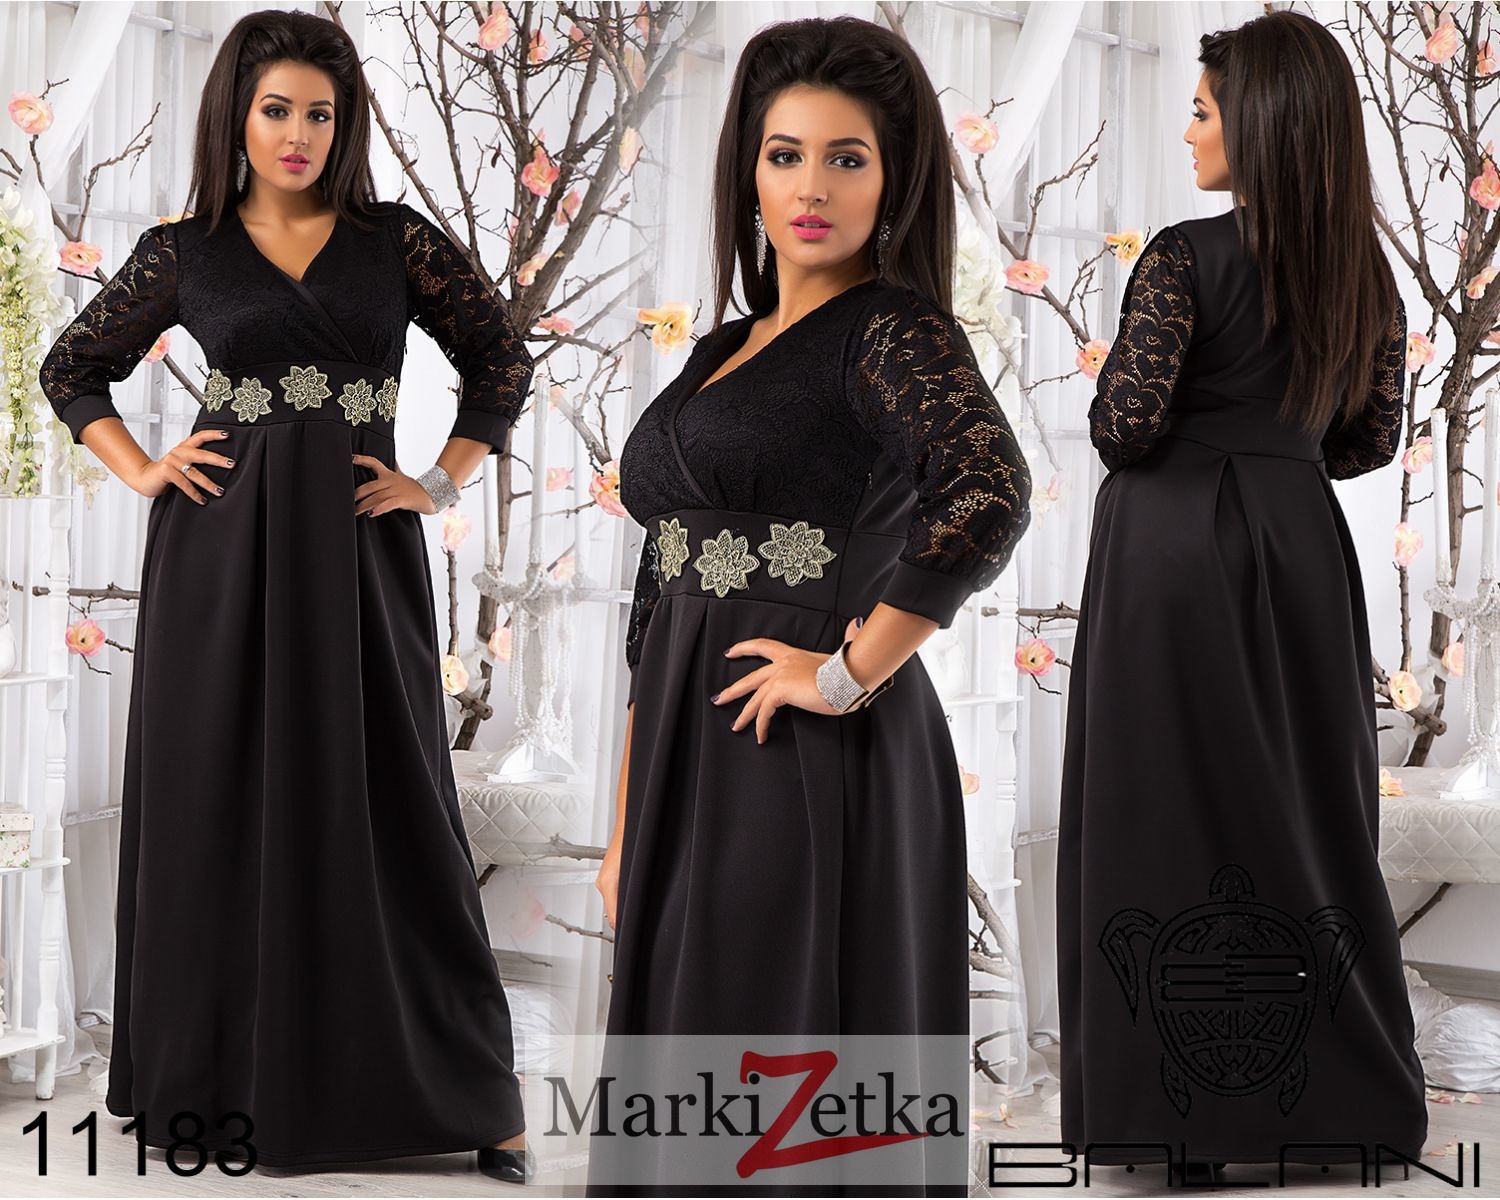 Купит турецкое платье в интернете